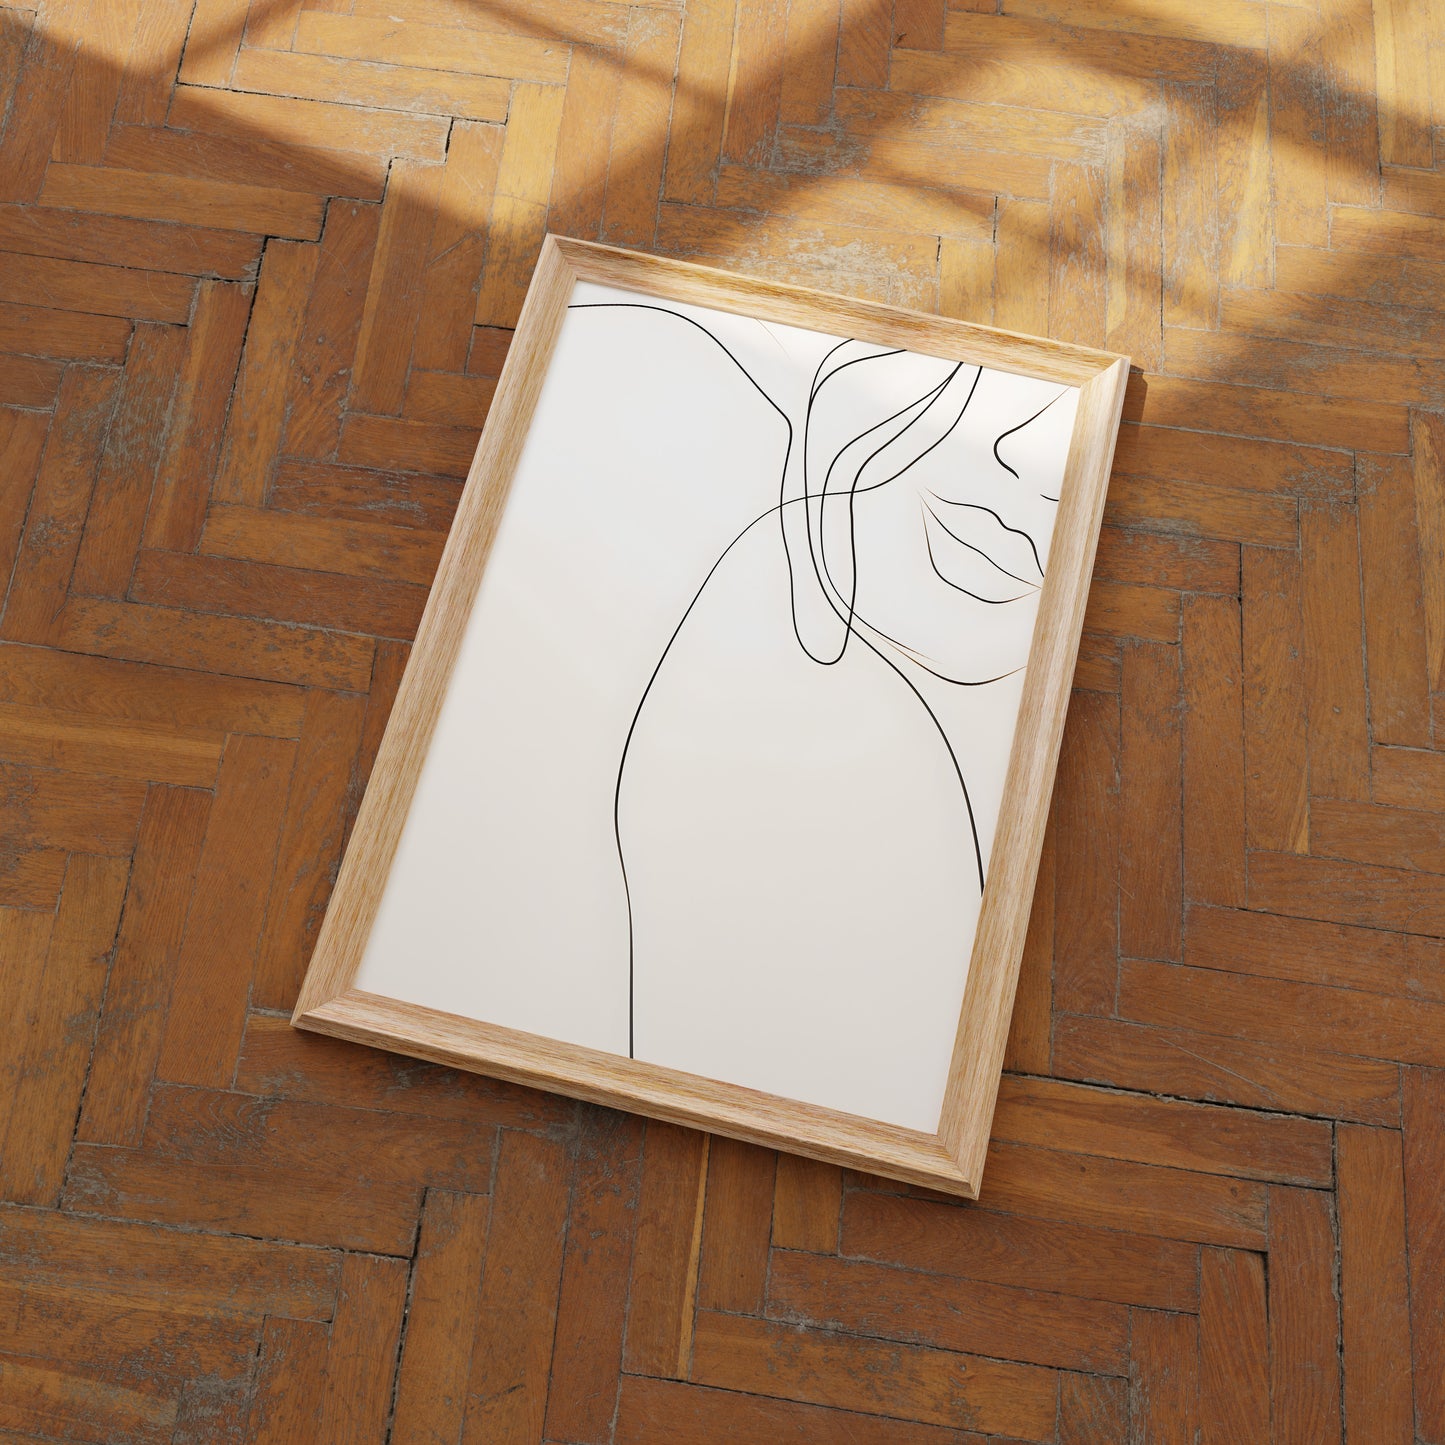 A minimalist line art portrait in a wooden frame lying on a herringbone pattern wood floor.